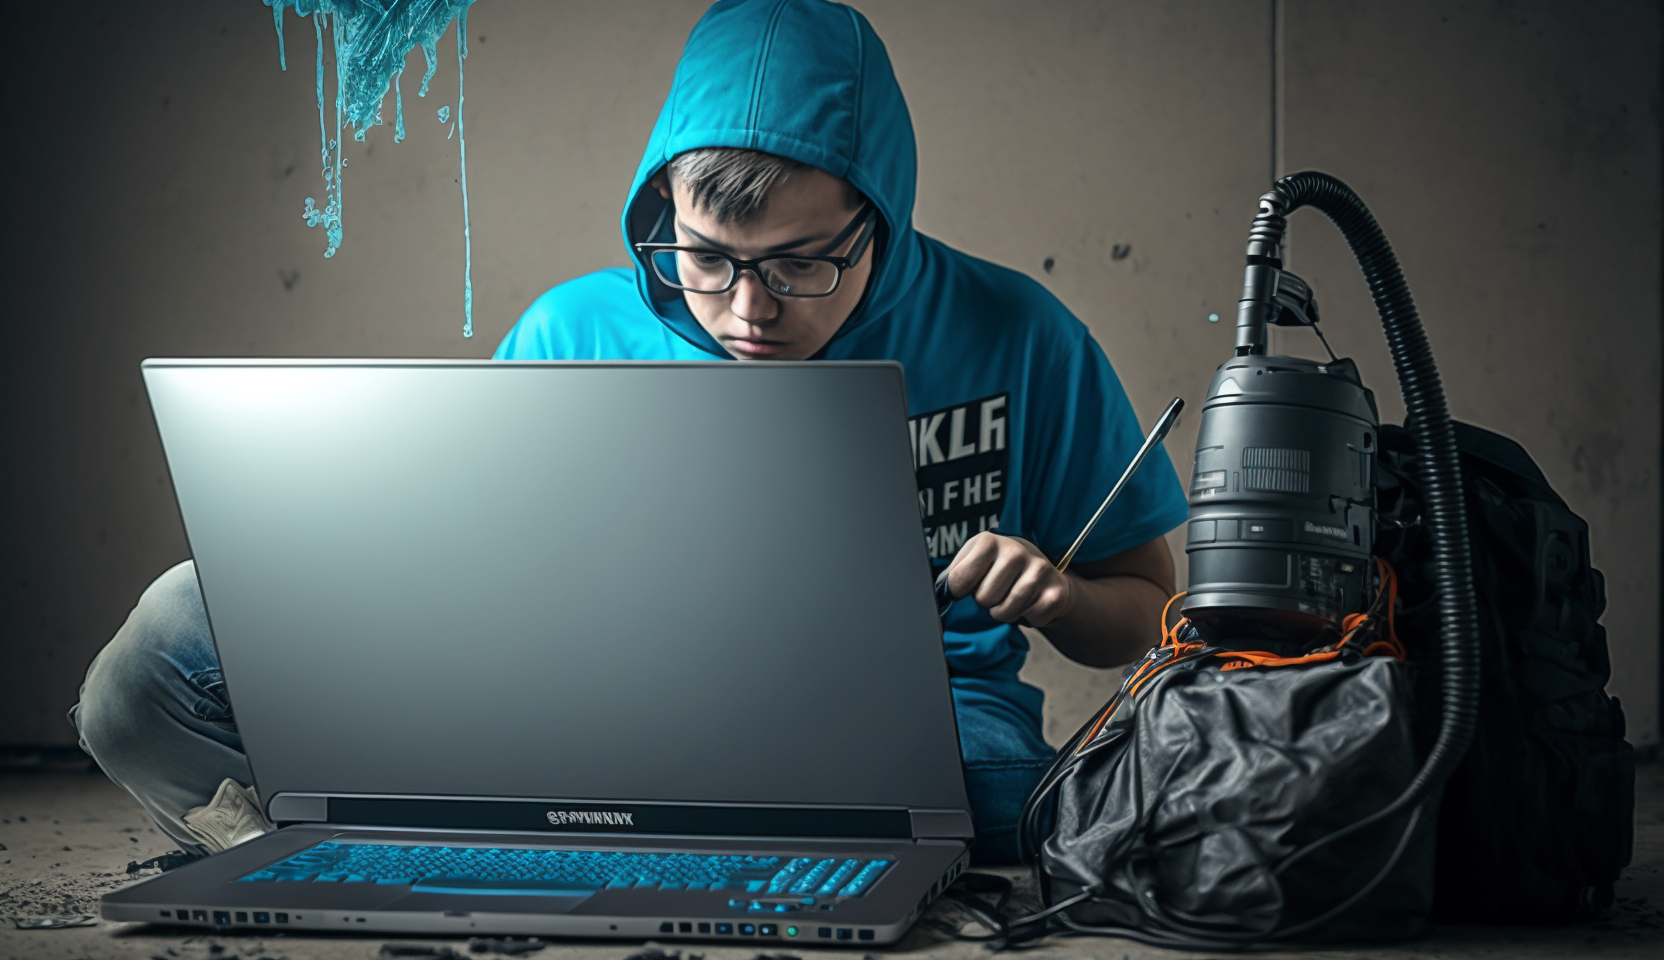 micro geek gamer guy reinigt einen gaming laptop, der sehr kleine geek gamer guy steht neben dem gaming laptop, der geek gamer guy hält einen wischmop